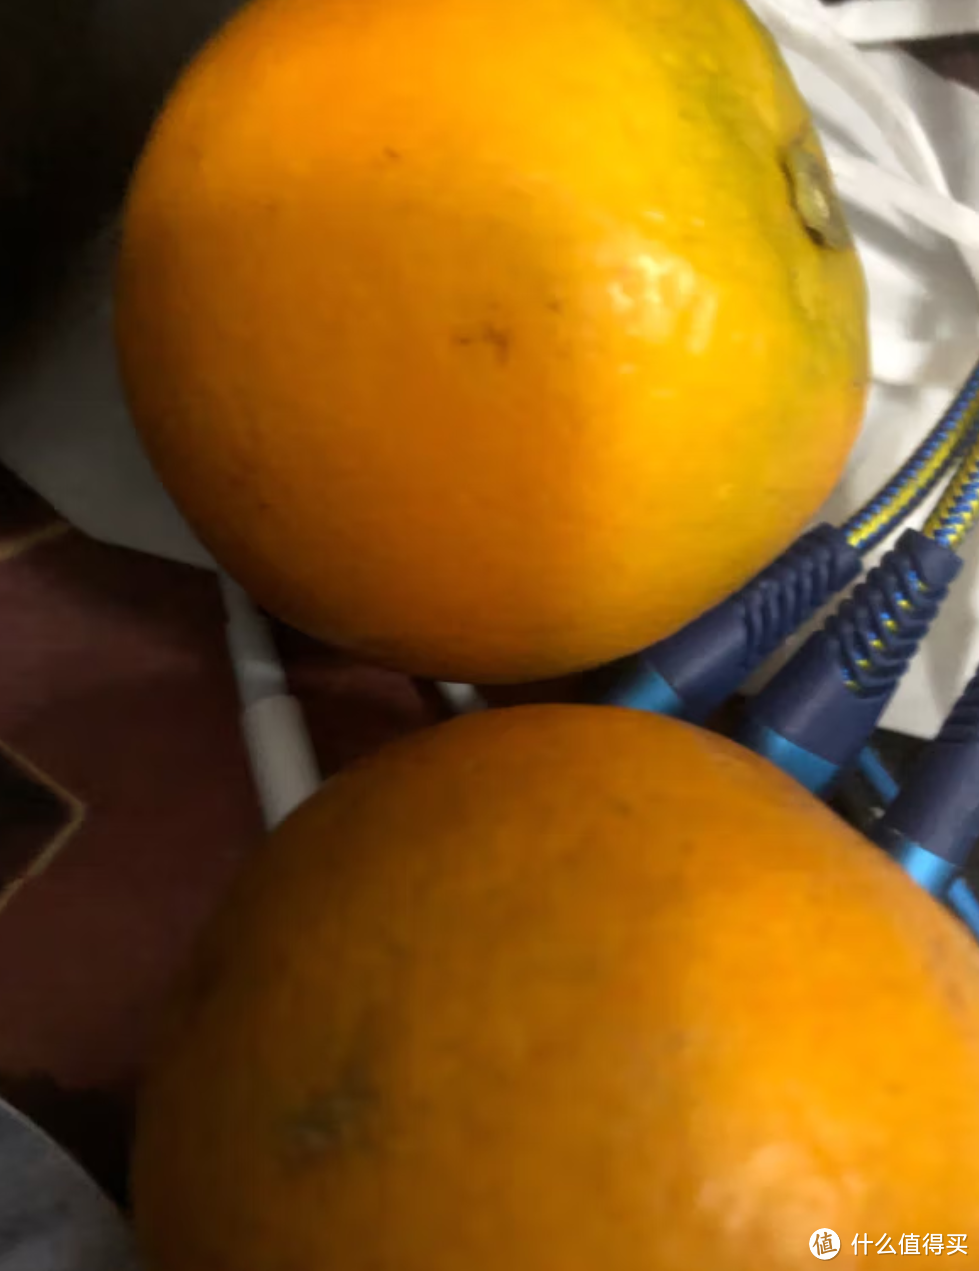 在这个夏日里，橙子可以说是我最喜欢吃是水果之一了